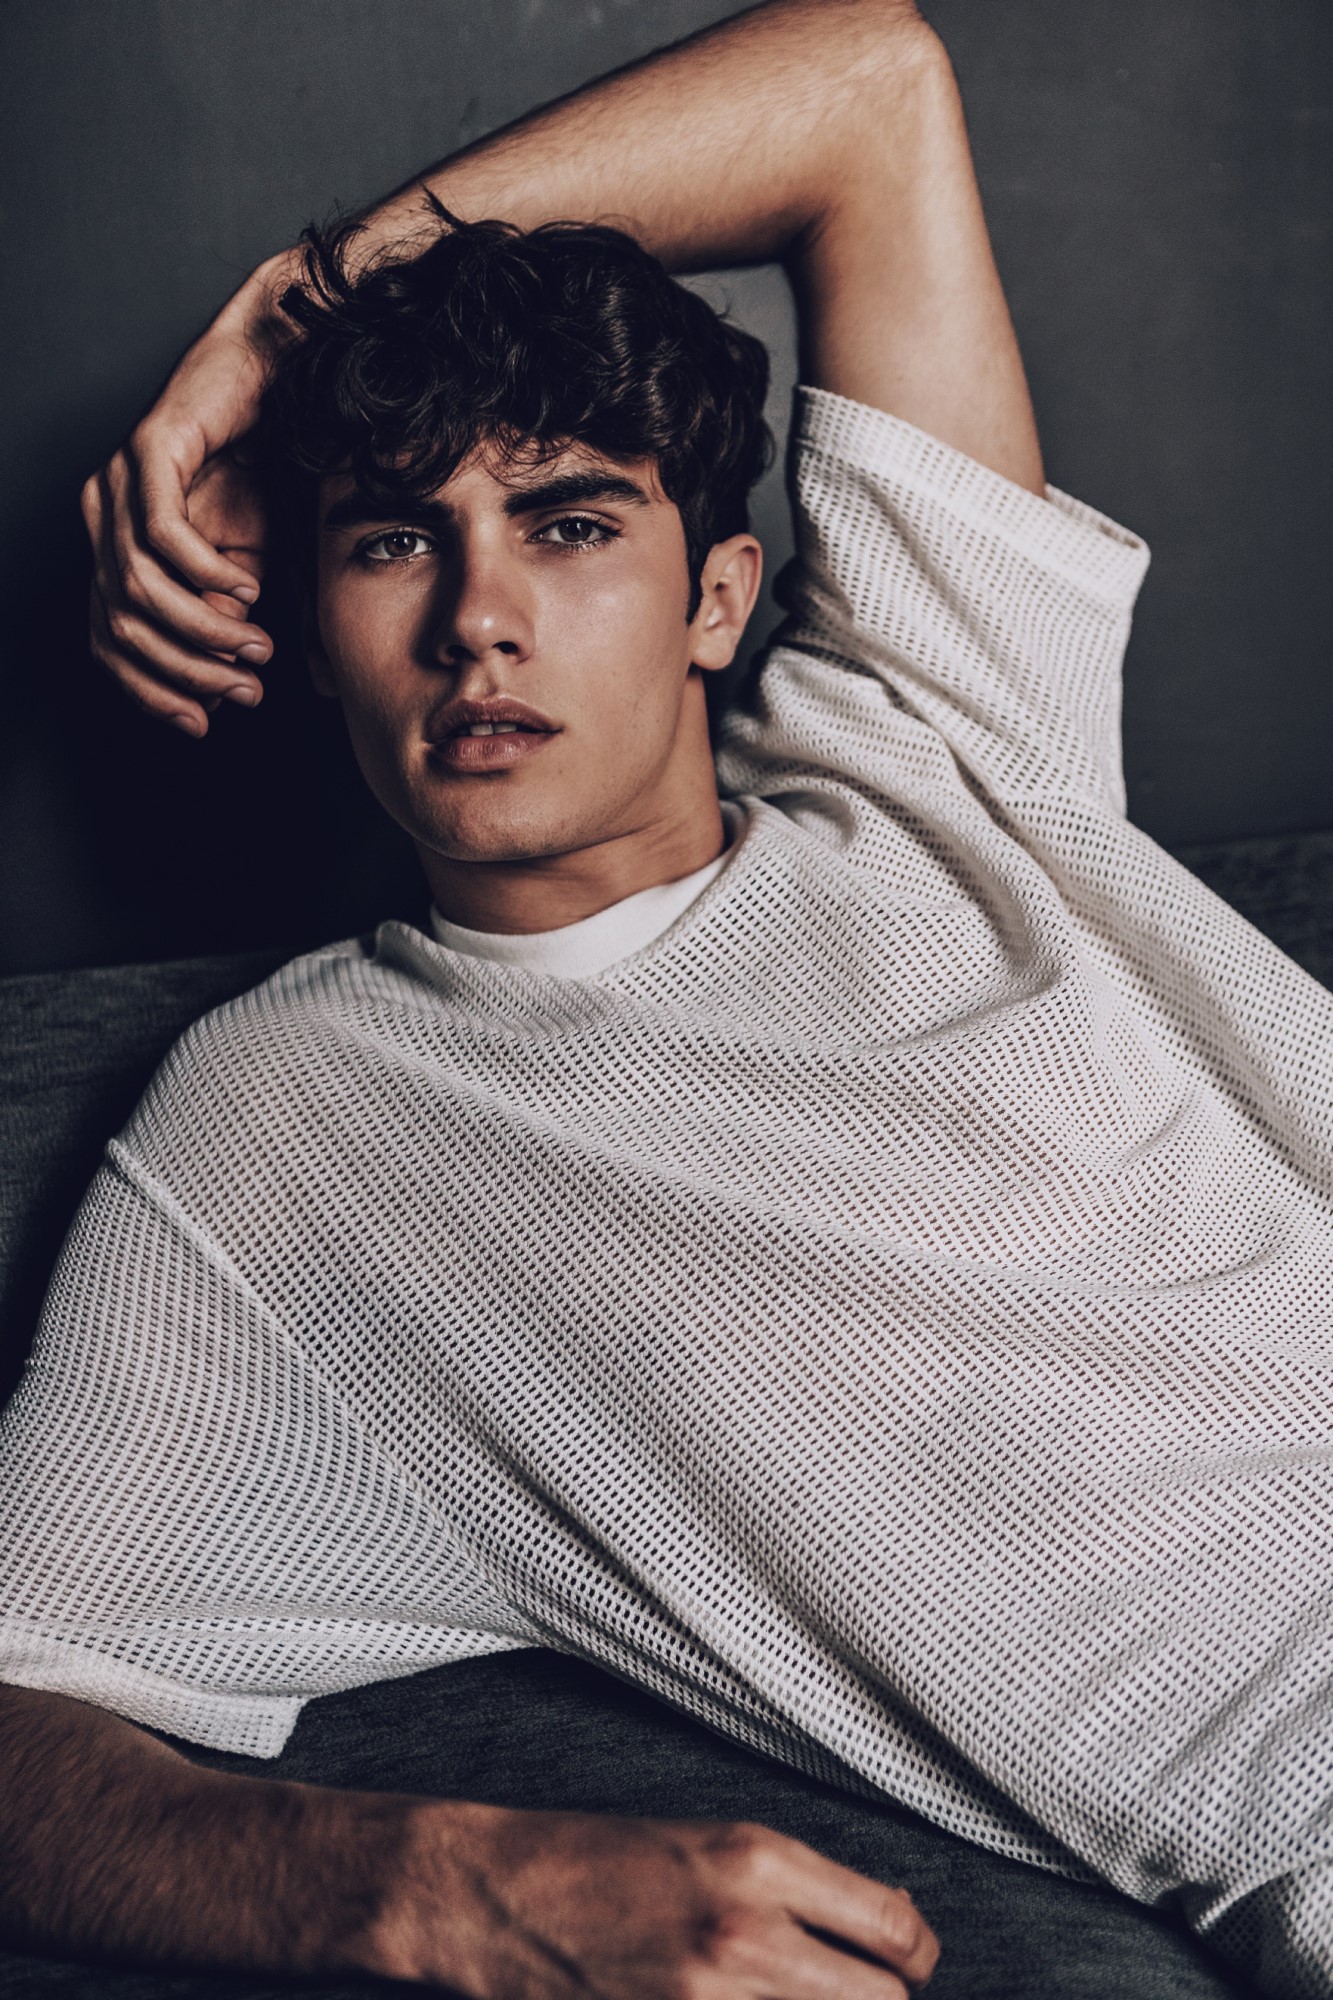 Diego alvarez model